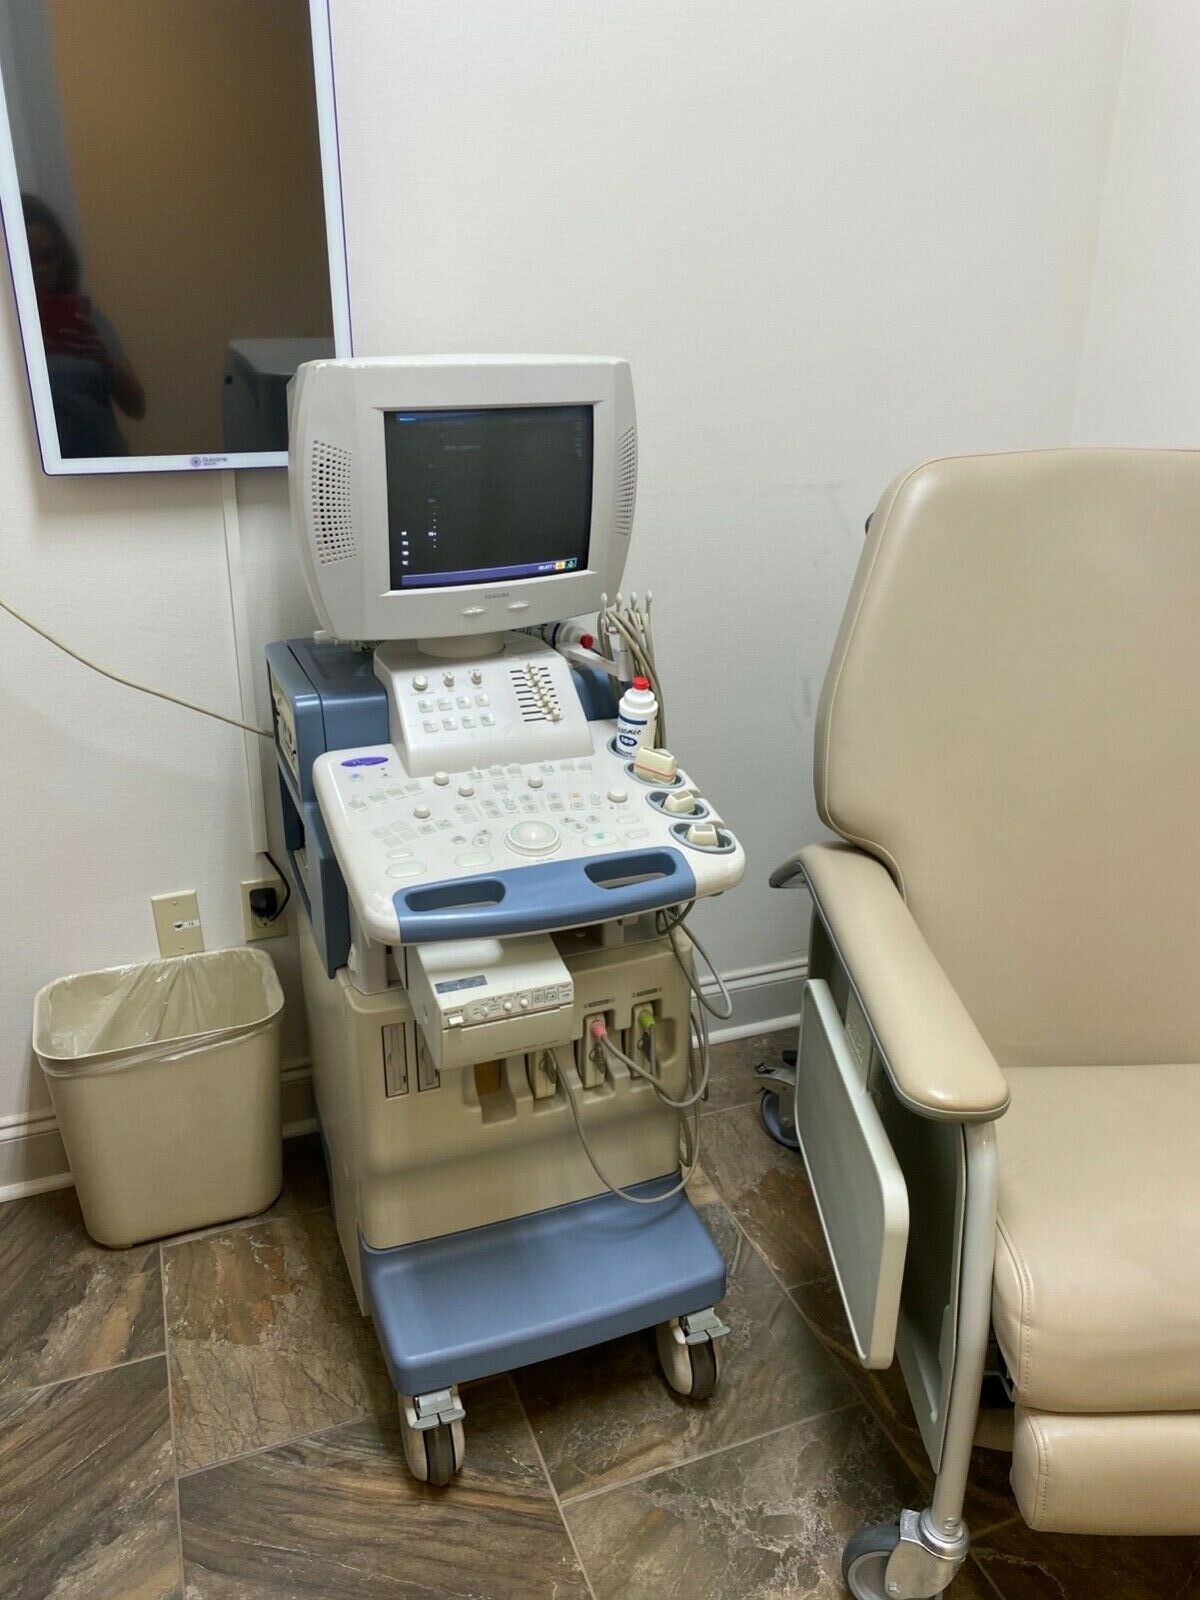 TOSHIBA NEMIO 30 SSA- 550A COMPLETE DIAGNOSTIC SYSTEM ULTRASOUND MACHINE DIAGNOSTIC ULTRASOUND MACHINES FOR SALE